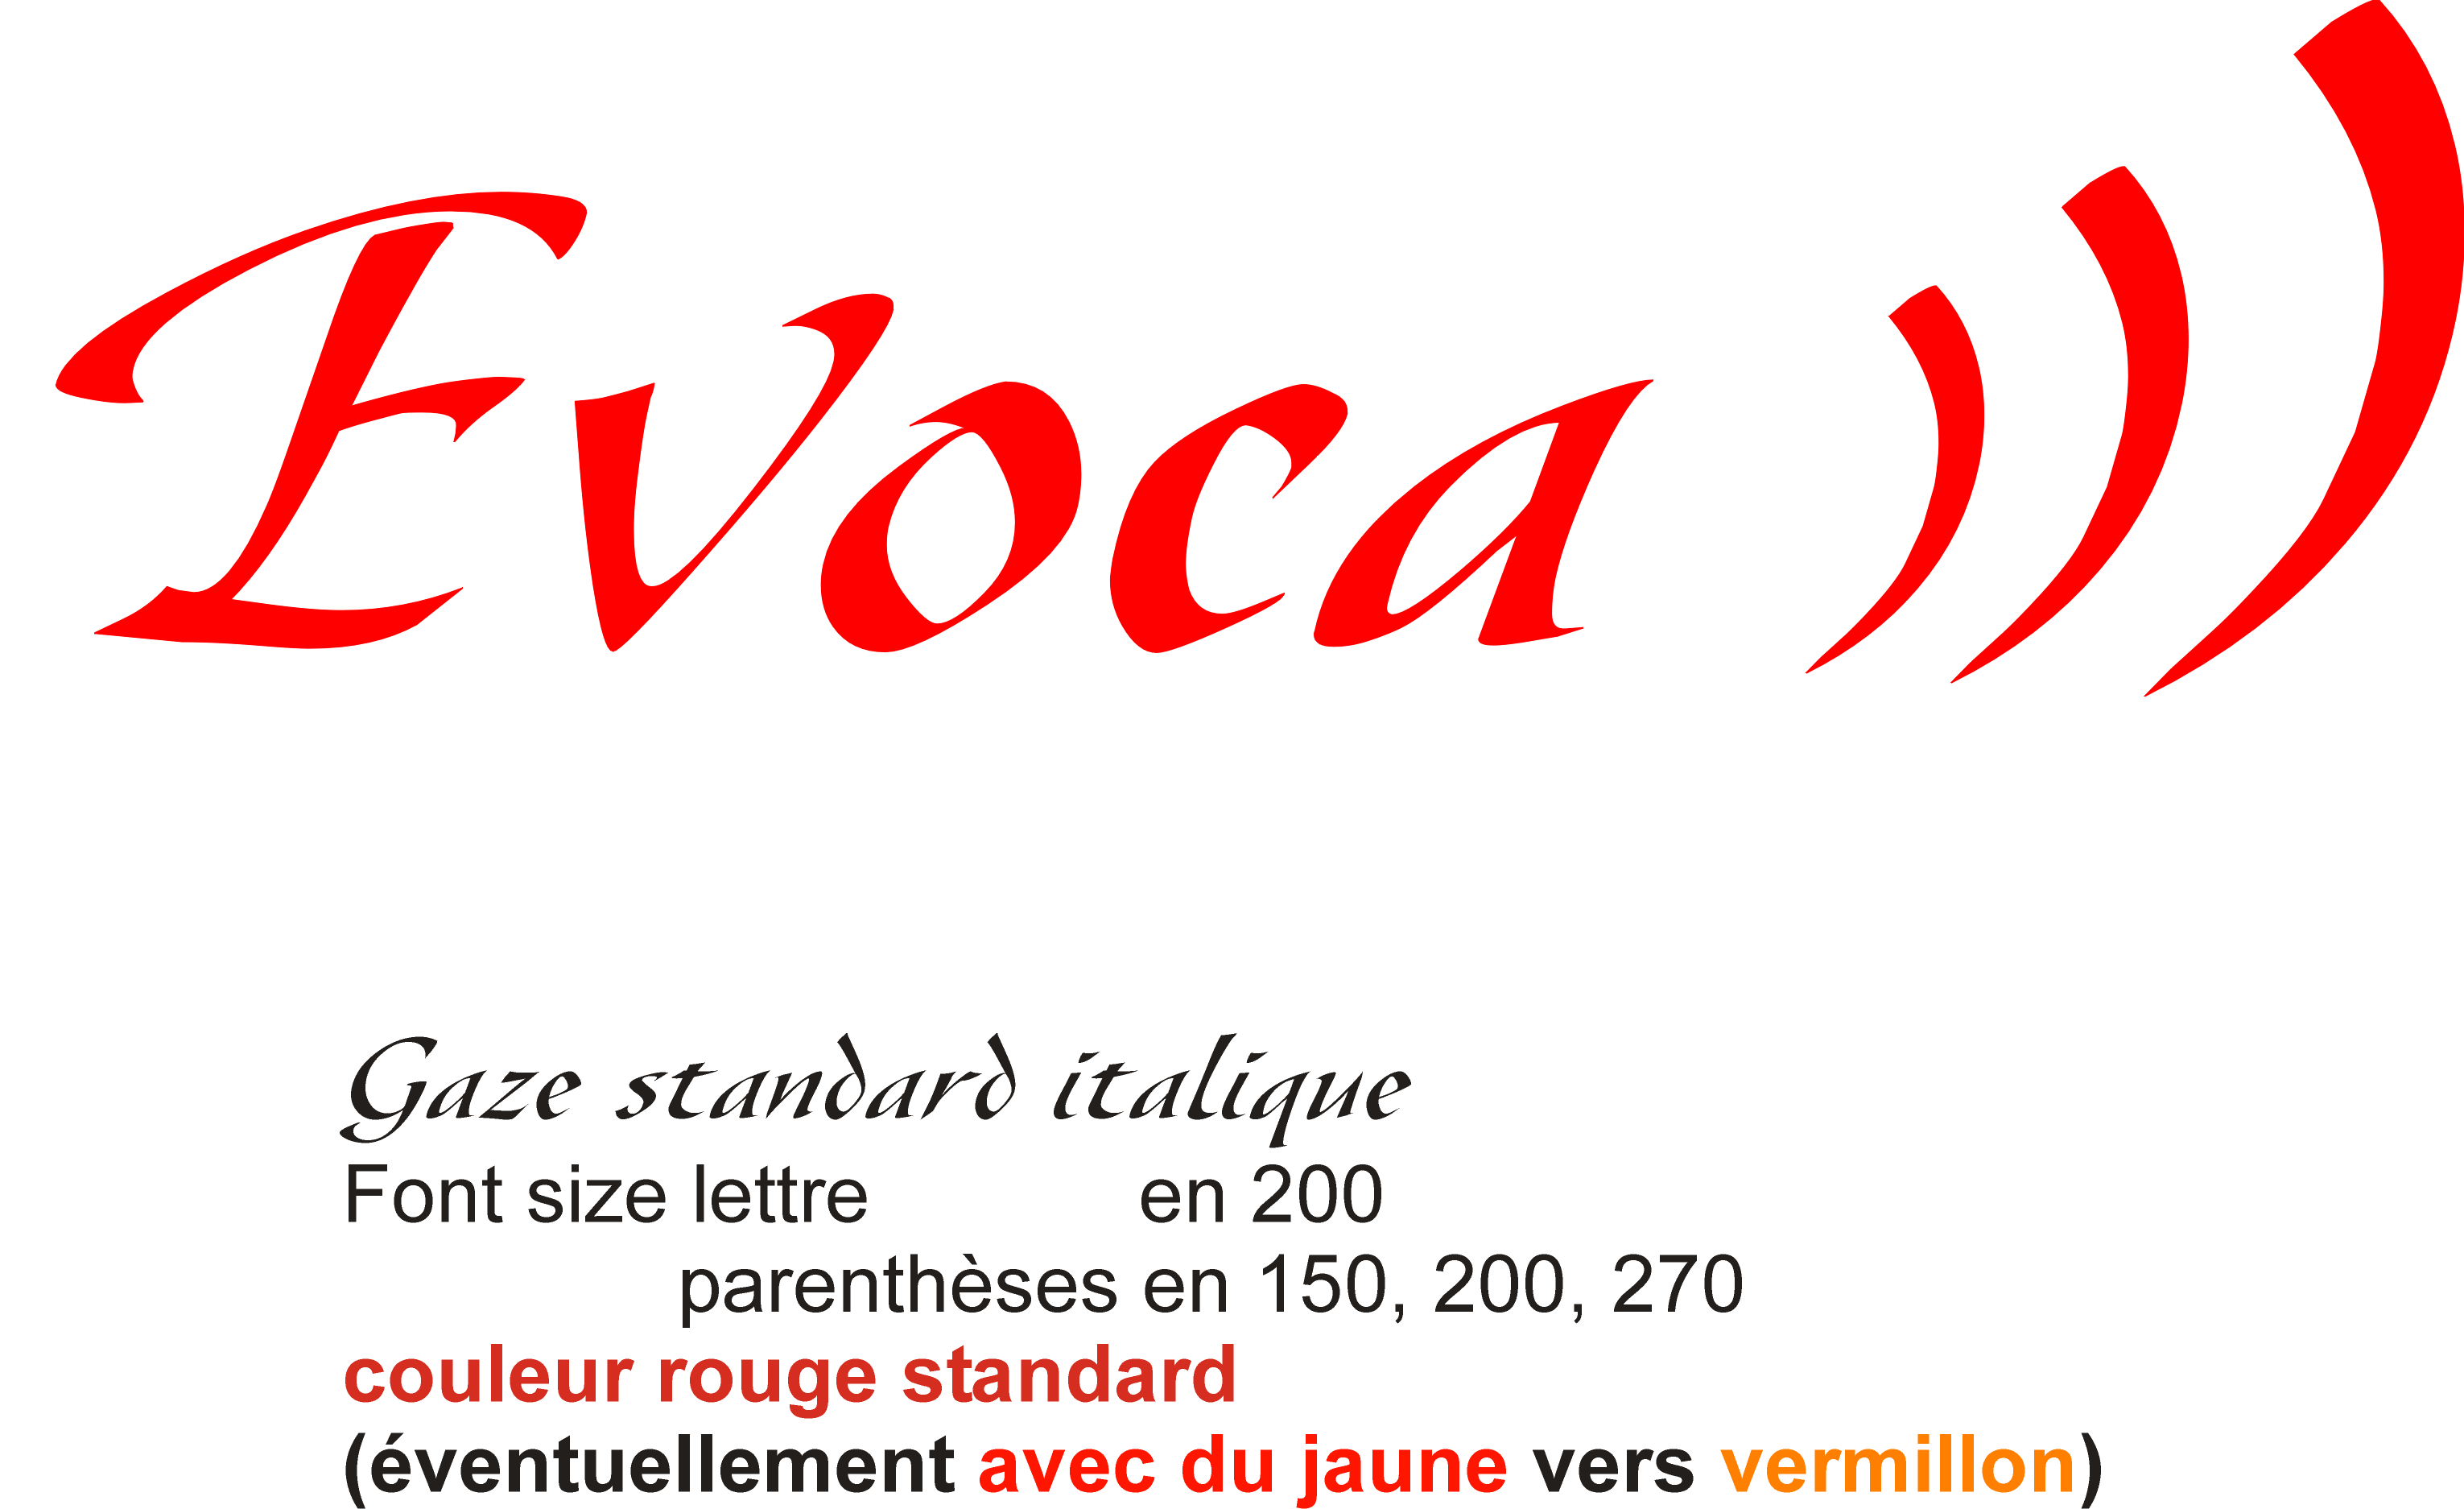 Comment faire le logo d'Evoca